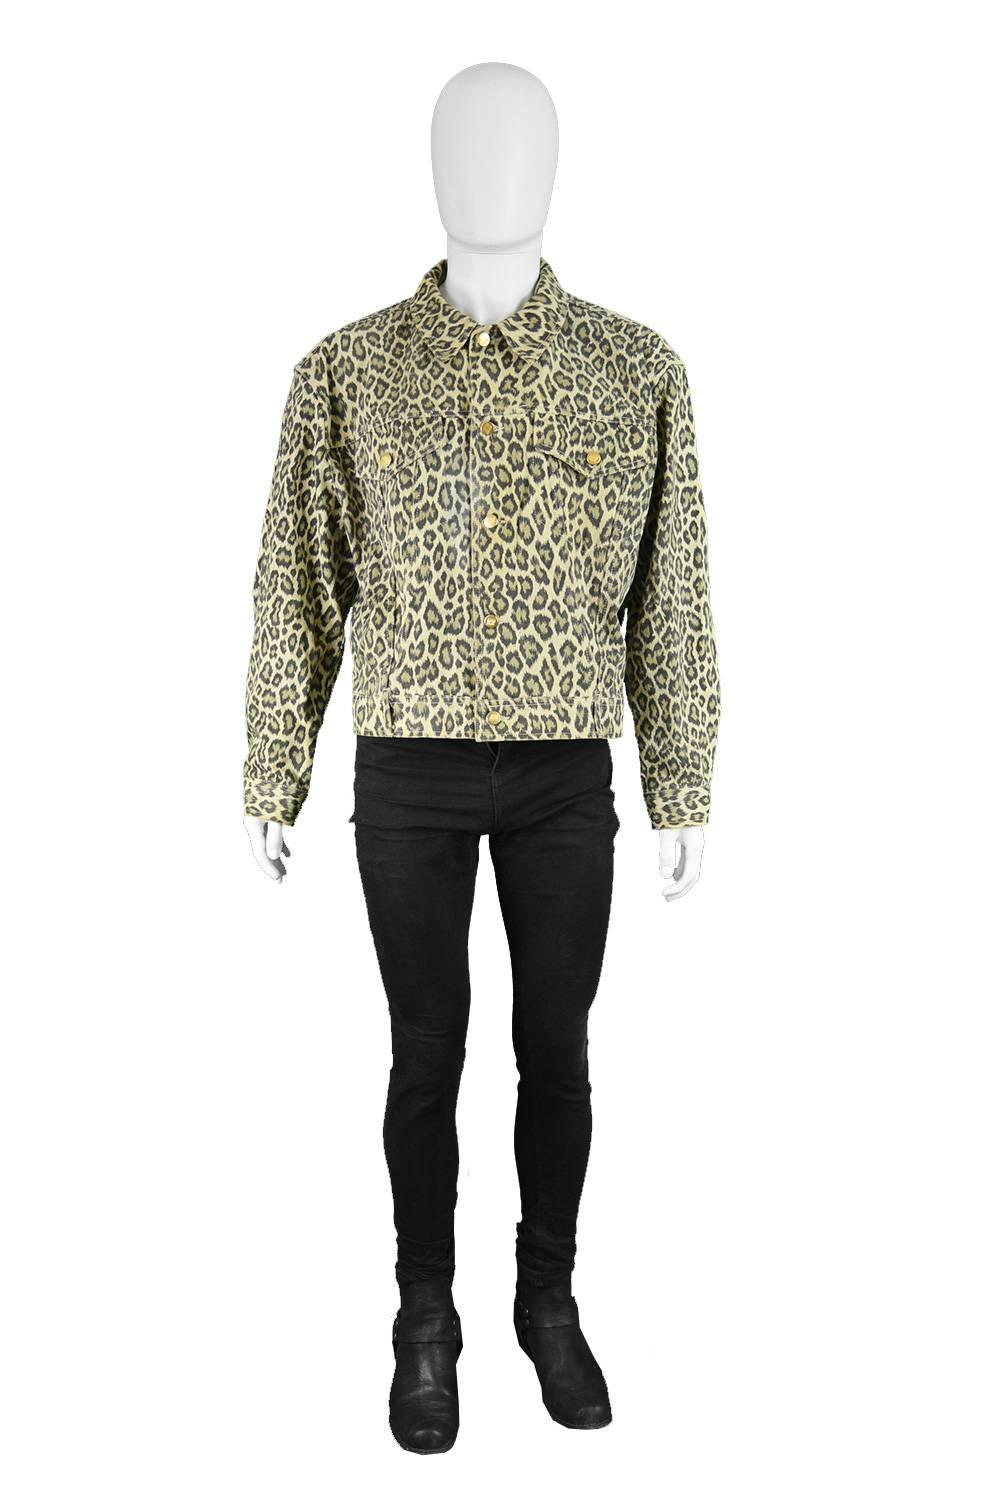 Jean Paul Gaultier Vintage Men's Leopard Print Denim Jacket, 1990s

Size: Marked men's XL. Please check measurements.
Chest - 50” / 127cm (has a loose fit on the chest like most mens denim jackets)
Waist - 42” / 106cm
Length (Shoulder to Hem) - 22”